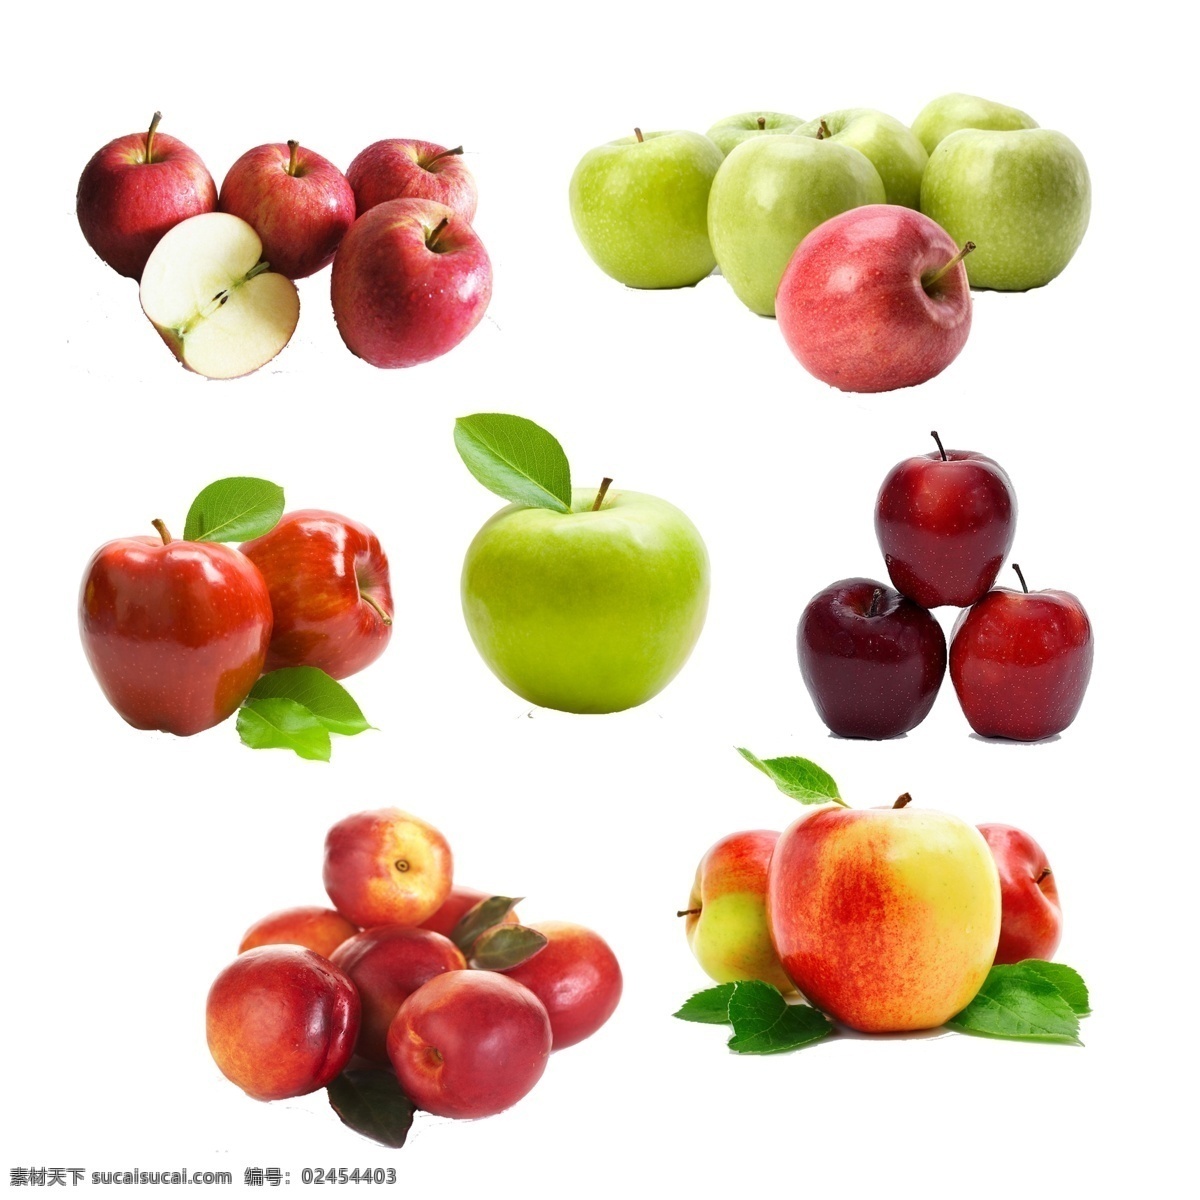 苹果 一堆苹果 青苹果 苹果图片 苹果素材 红苹果 一个苹果 切开的苹果 苹果广告 分层 源文件